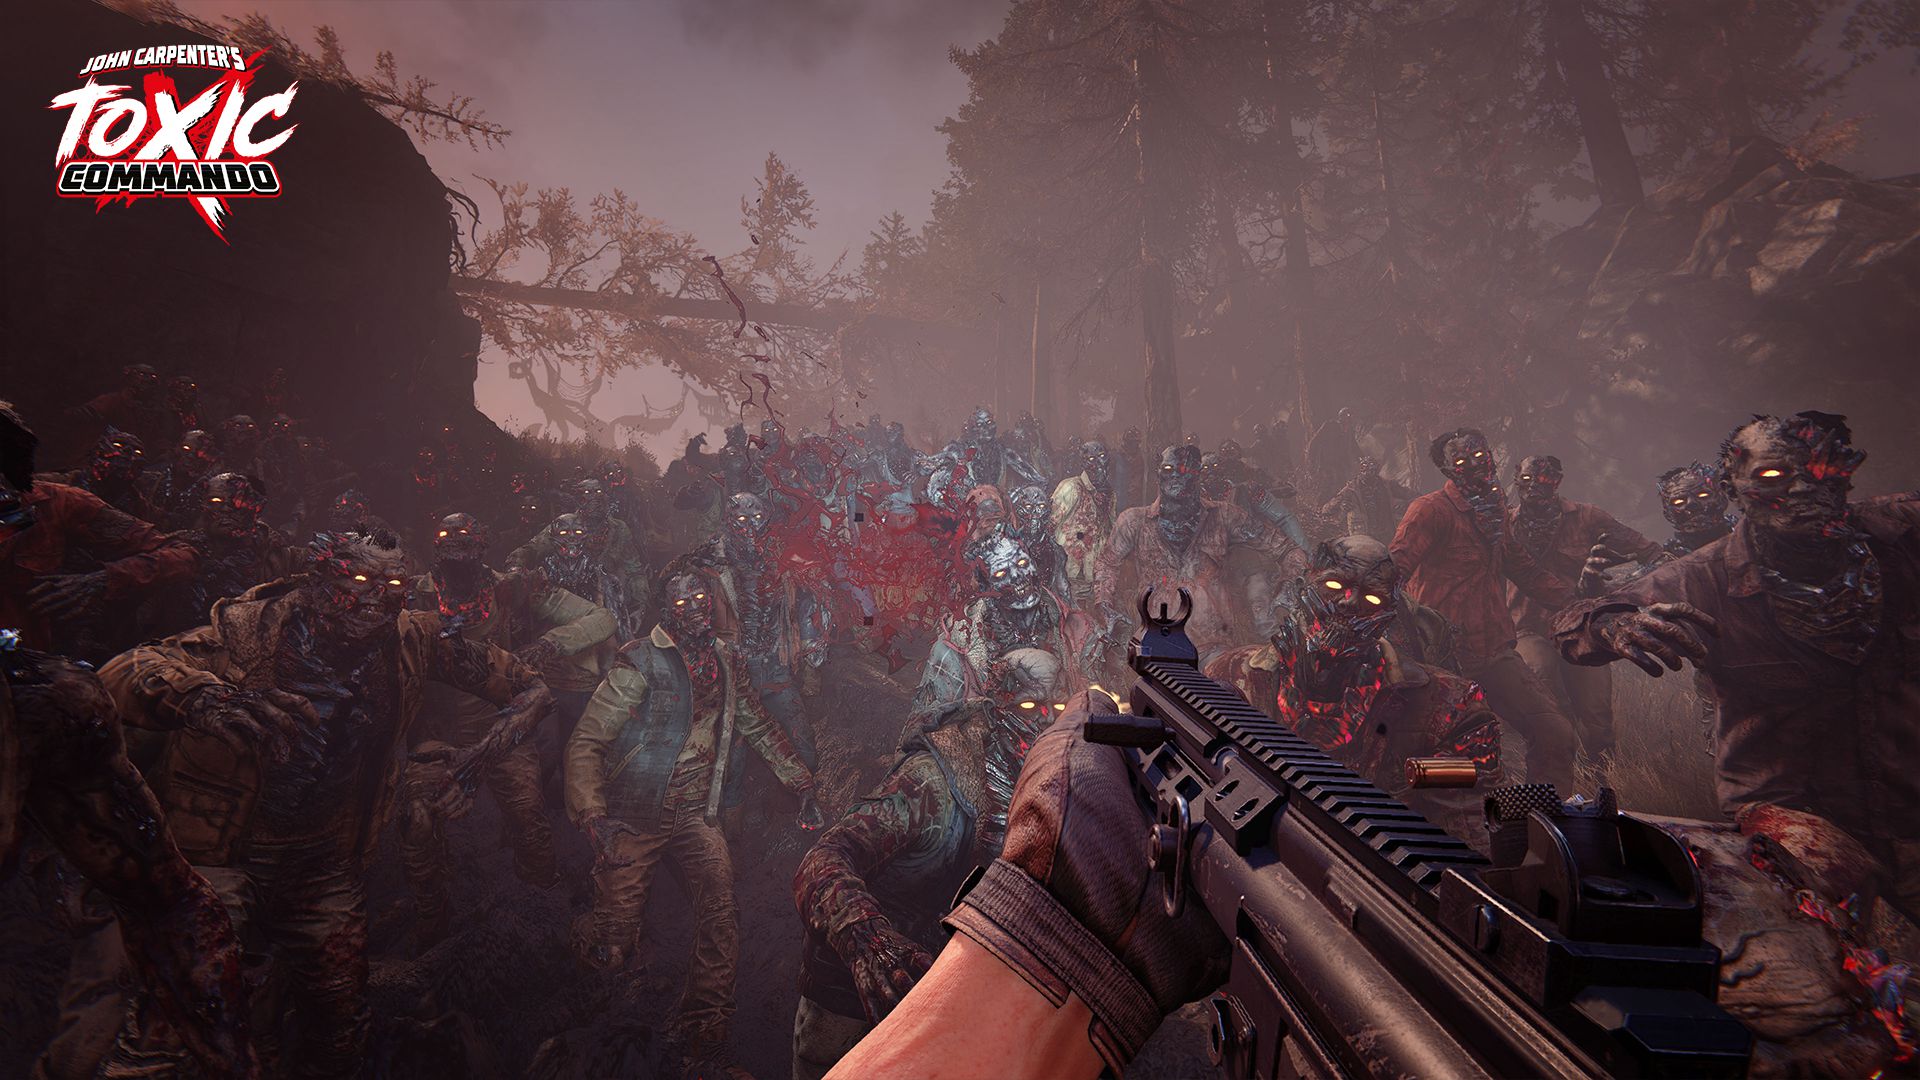 uno screenshot in prima persona di una persona con un fucile mitragliatore di fronte a un'orda di zombie in John Carpenter's Toxic Commando